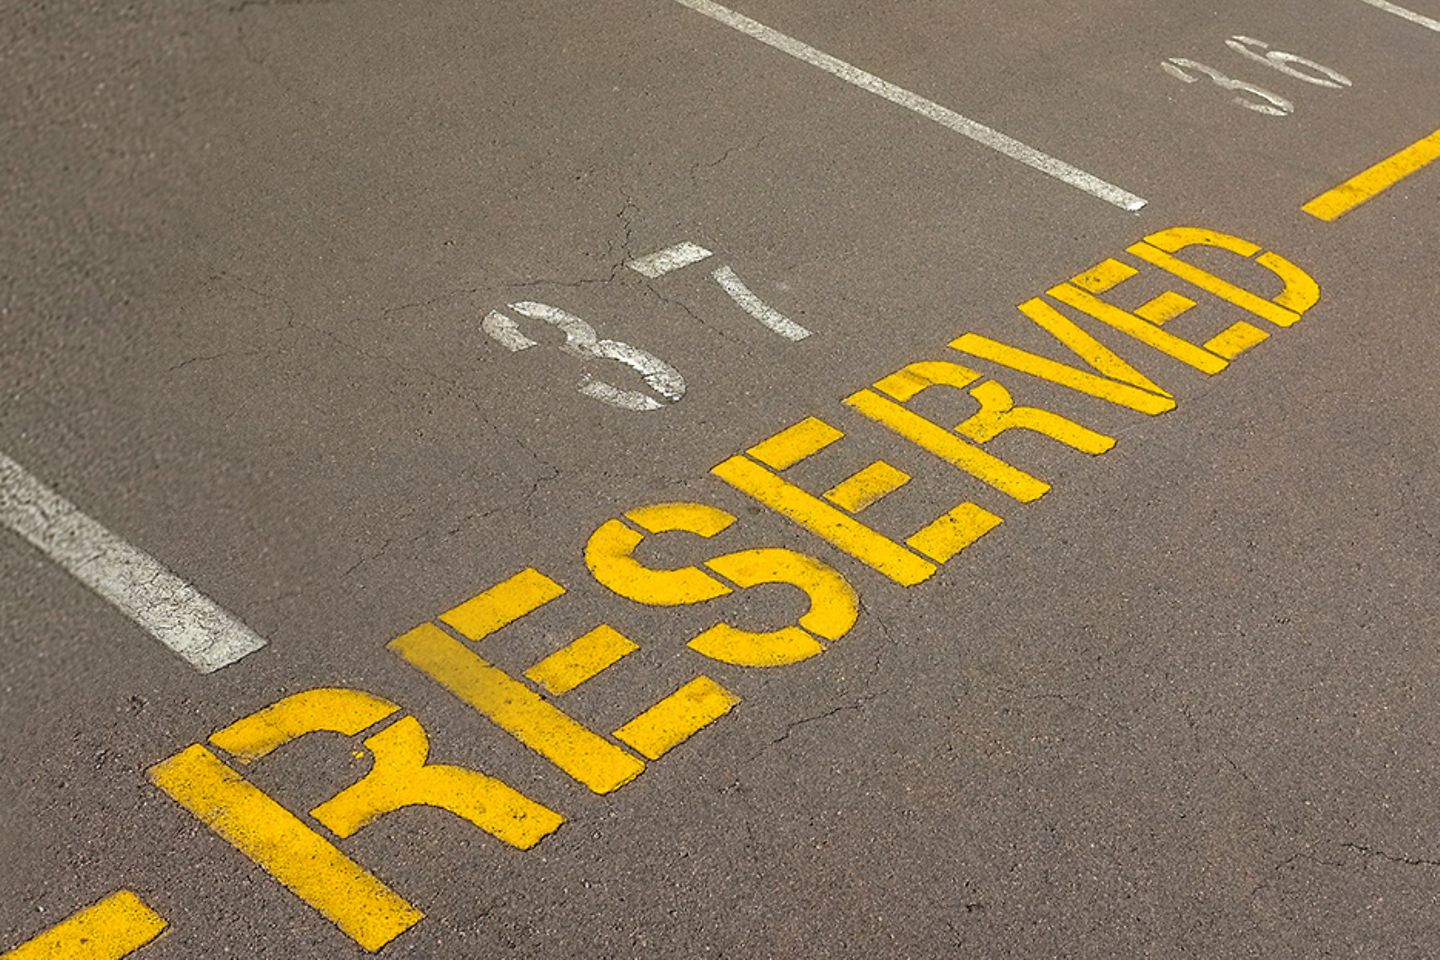 Foto leerer Parkplätze, einer mit der Aufschrift “reserved”.